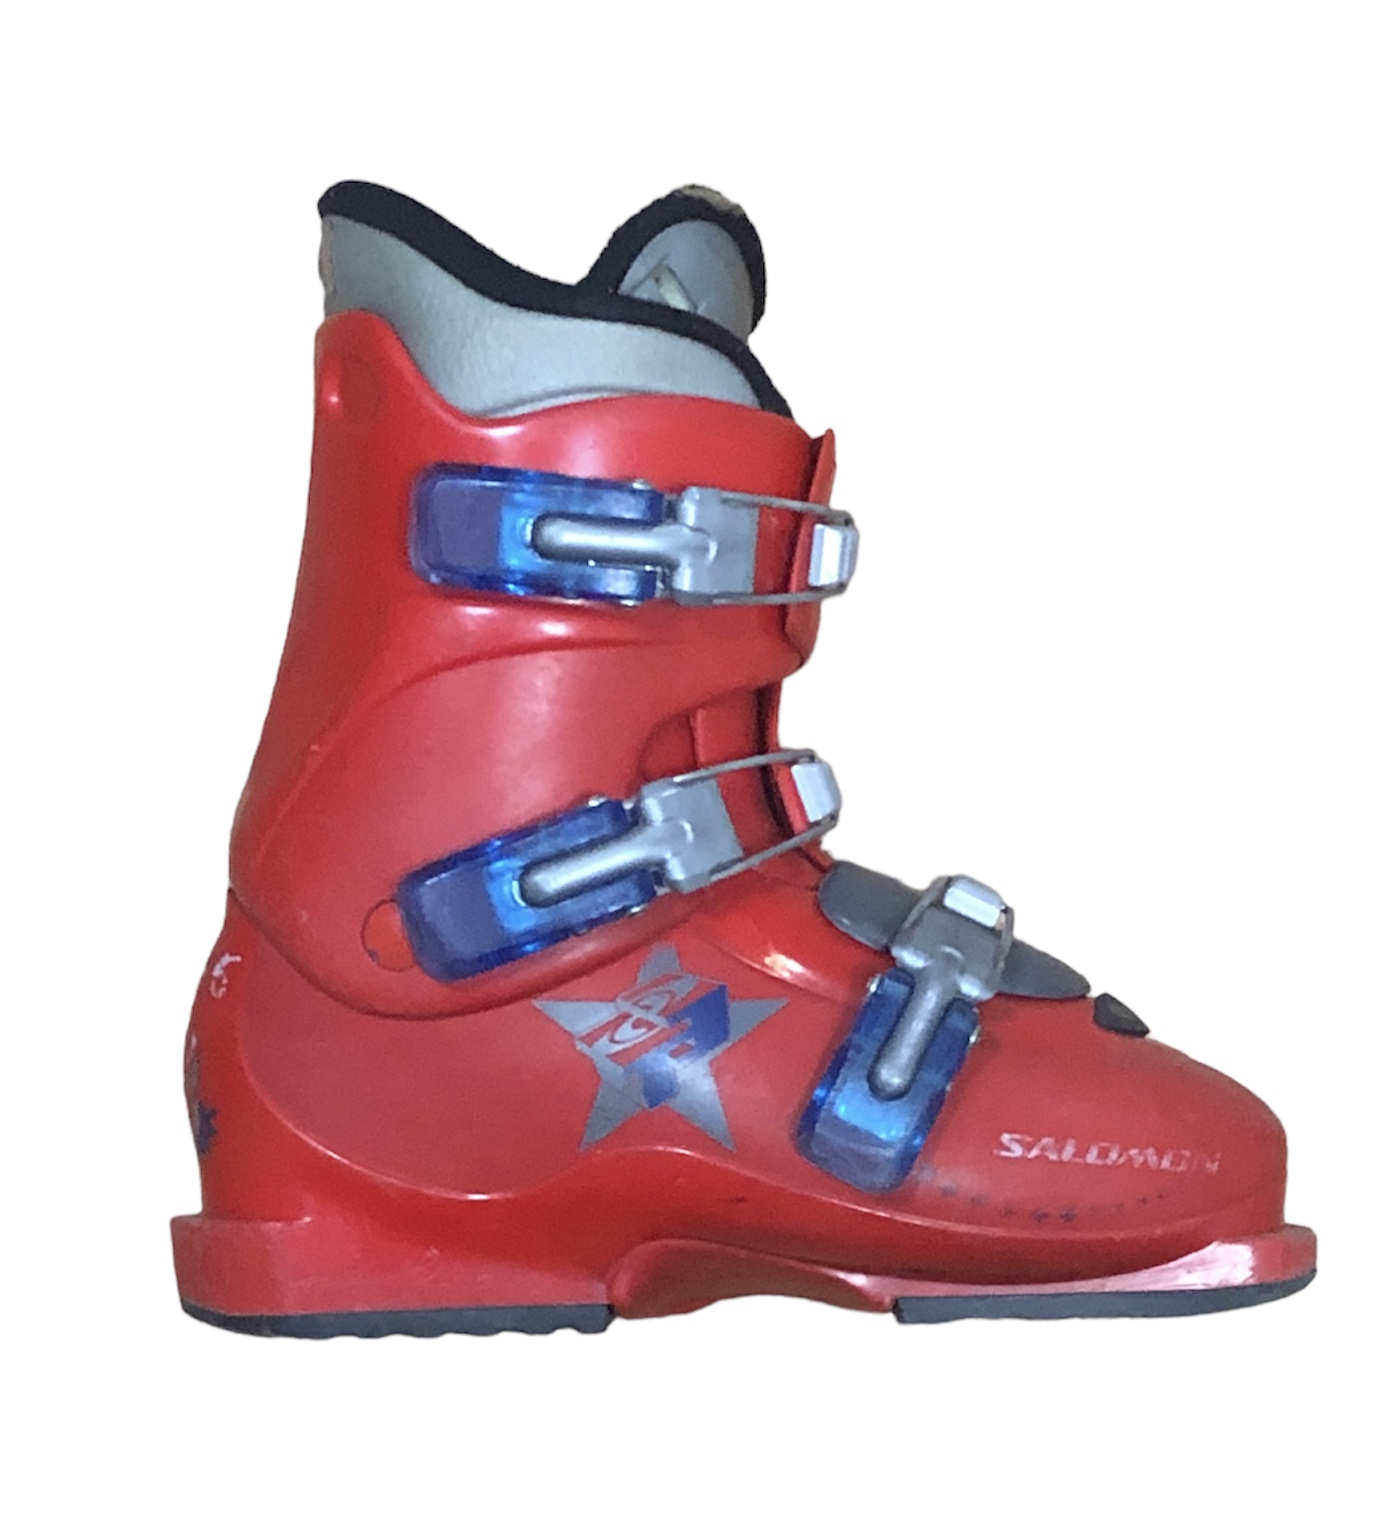 Używane buty narciarskie SALOMON 23,5 / 276mm rozmiar 37 :: Sklep Sportowy  - outlet sportowy, koncówki kolekcji, wyprzedaże, narty, deski, wiązania,  sprzet narciarski, buty sportowe